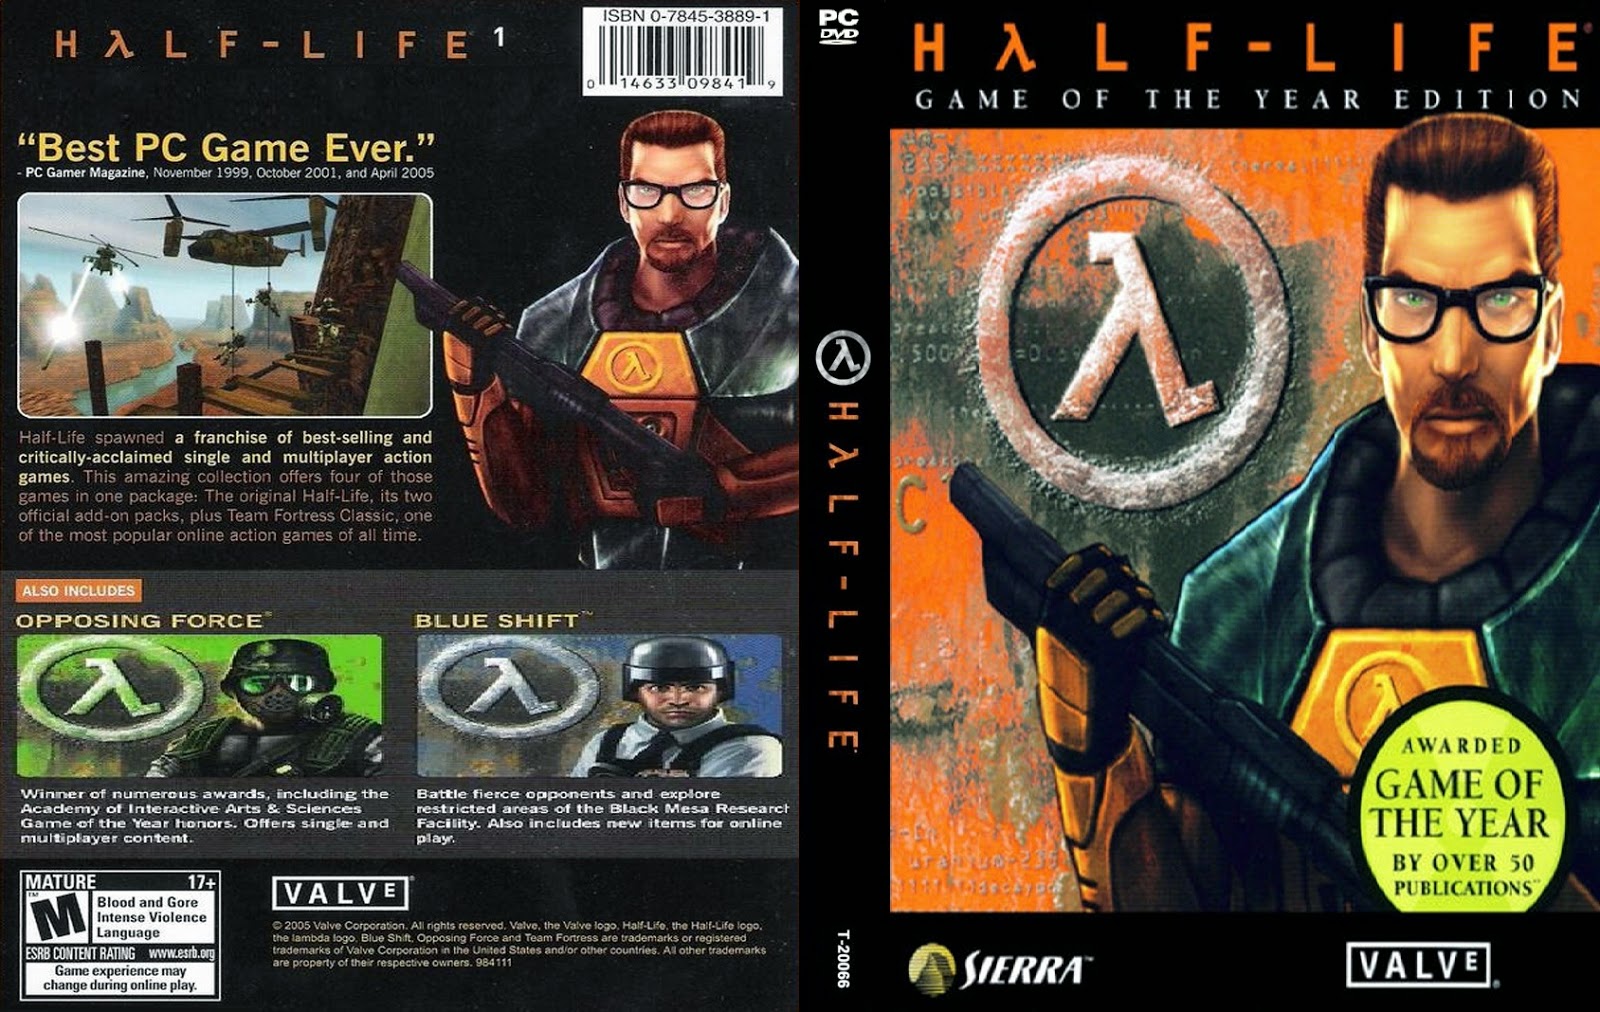 Half life сохранения. Half Life 1 обложка. Half Life 1998 обложка. Half Life 1 обложка 1998 диск. PC Gamer 1999 обложка half-Life.